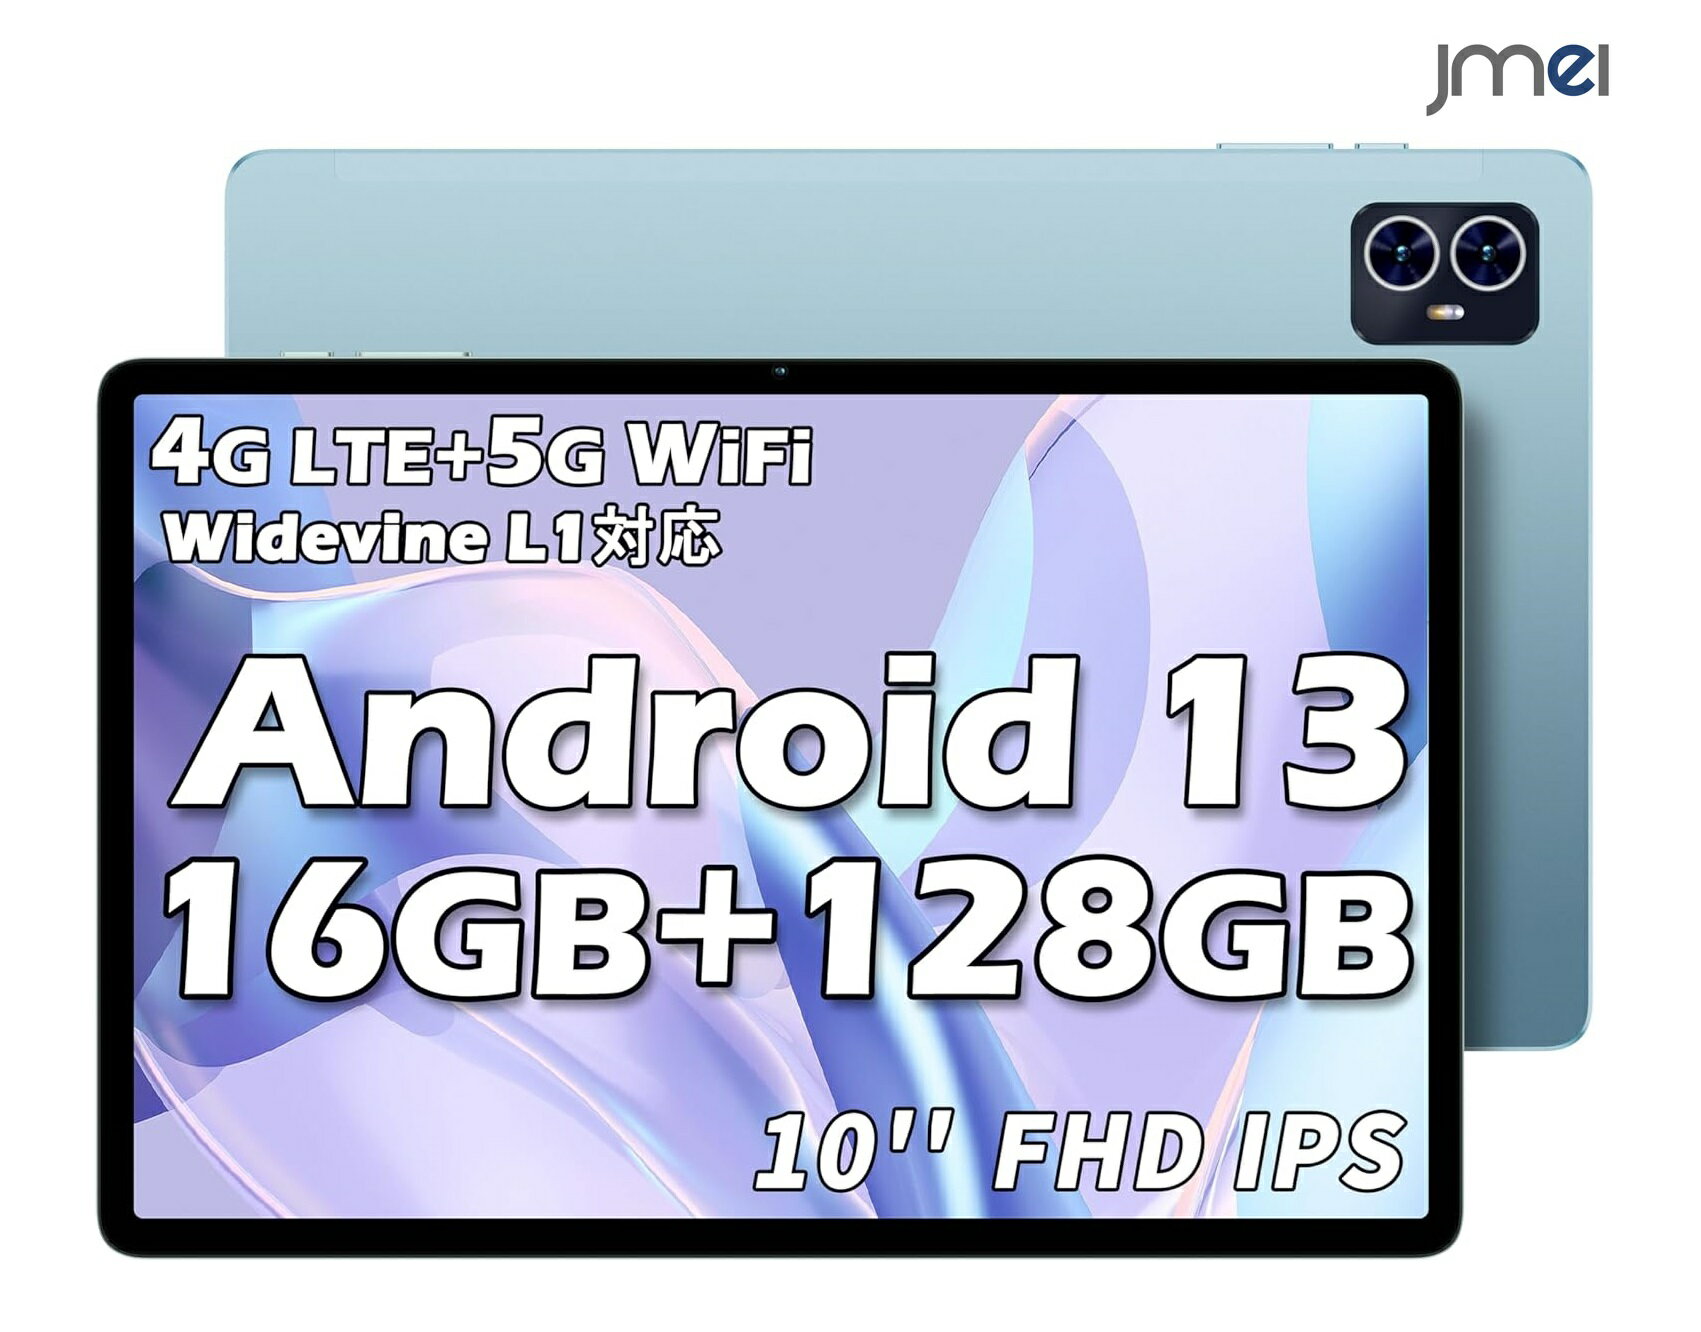 キッズタブレット タブレット アンドロイド 10インチ Android 13 16GB 128GB 1TB拡張 8コアCPU タブレット Widevine L1対応 1920×1200 FHD IPS 画面 4G LTE SIMフリー タブレット wi-fi モデルGMS認証 13MP 5MPカメラ 5G WiFi GPS BT5.0 6000mAh OTG 無線投影 顔認証